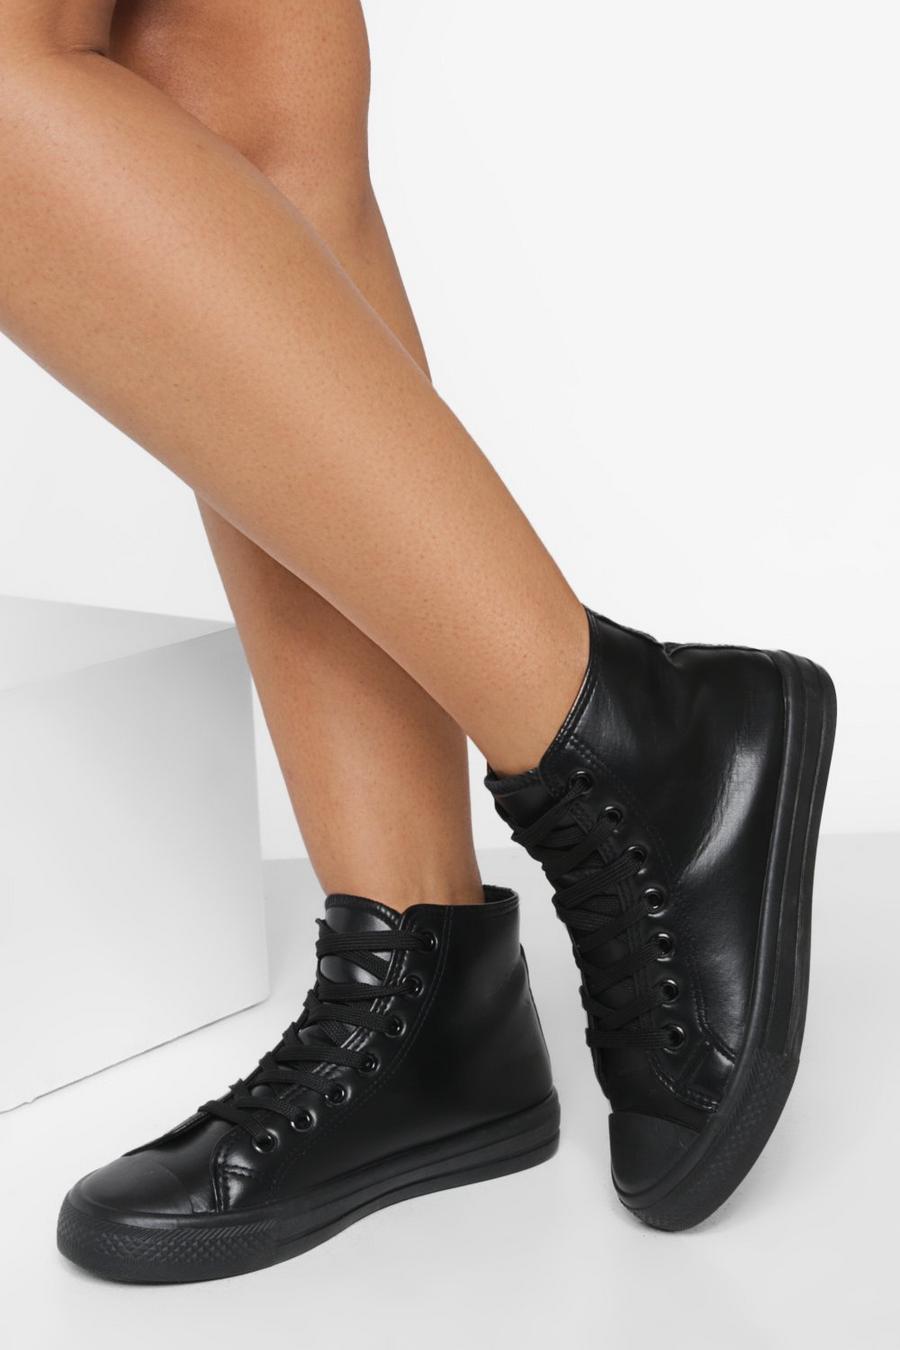 Zapatillas deportivas altas de holgura ancha y cuero sintético, Black image number 1